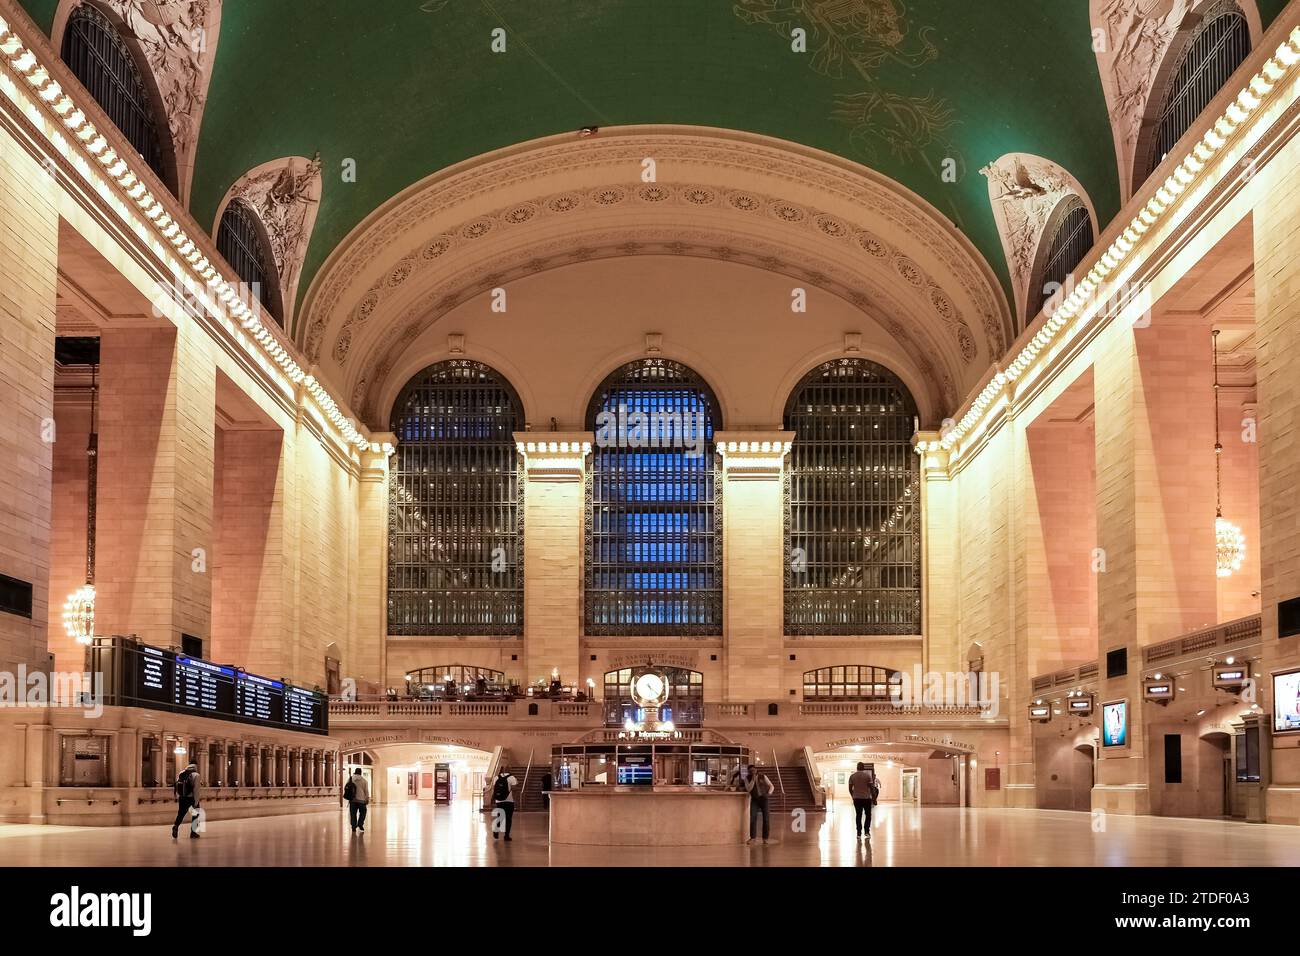 Dettaglio architettonico del Grand Central Terminal (GCT) (Grand Central Station) (Grand Central), un terminal ferroviario per pendolari a Midtown Manhattan Foto Stock